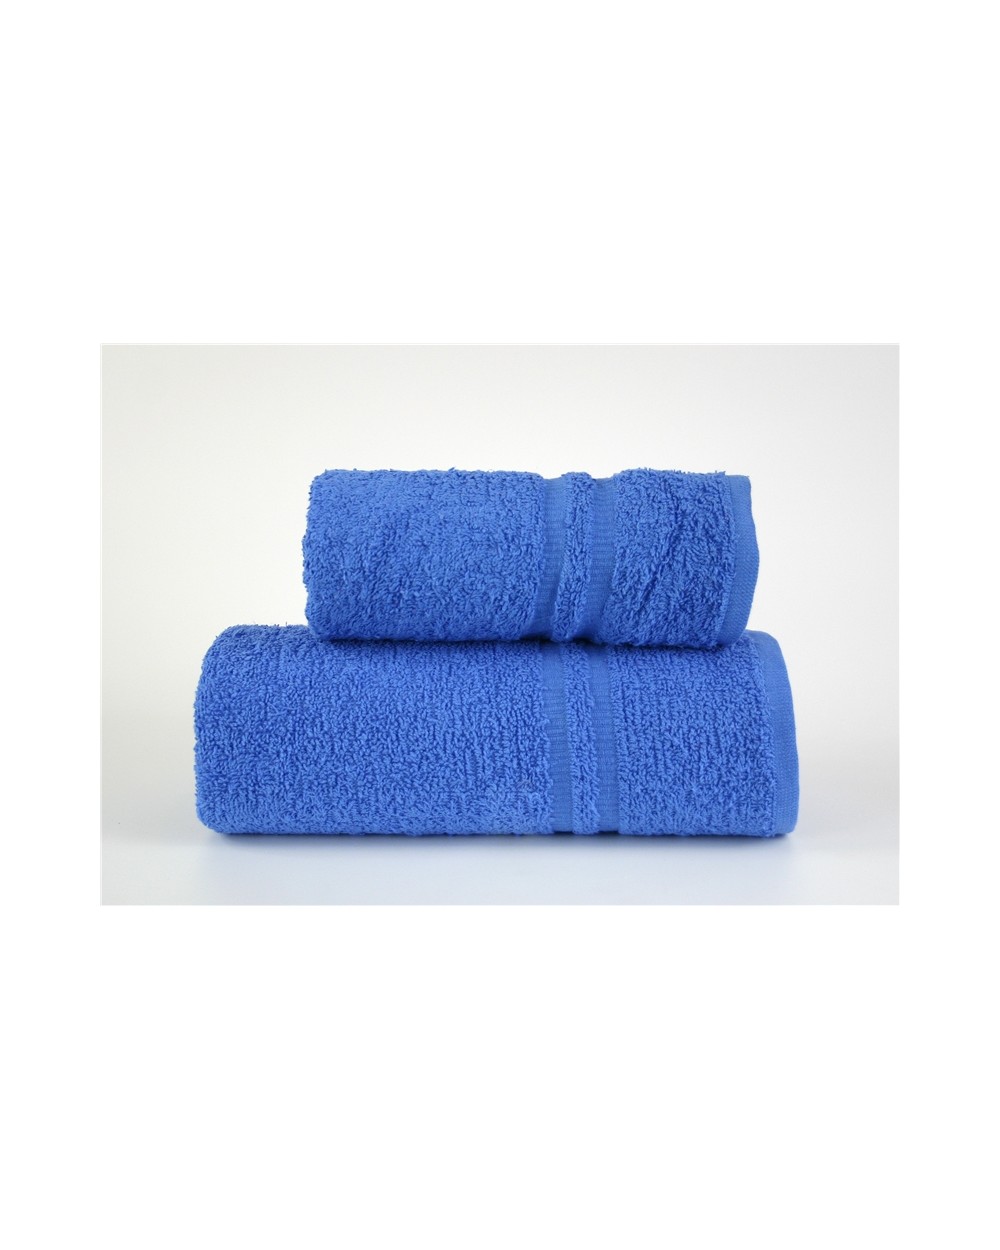 Ręcznik Junak New bawełna 50x100 niebieski